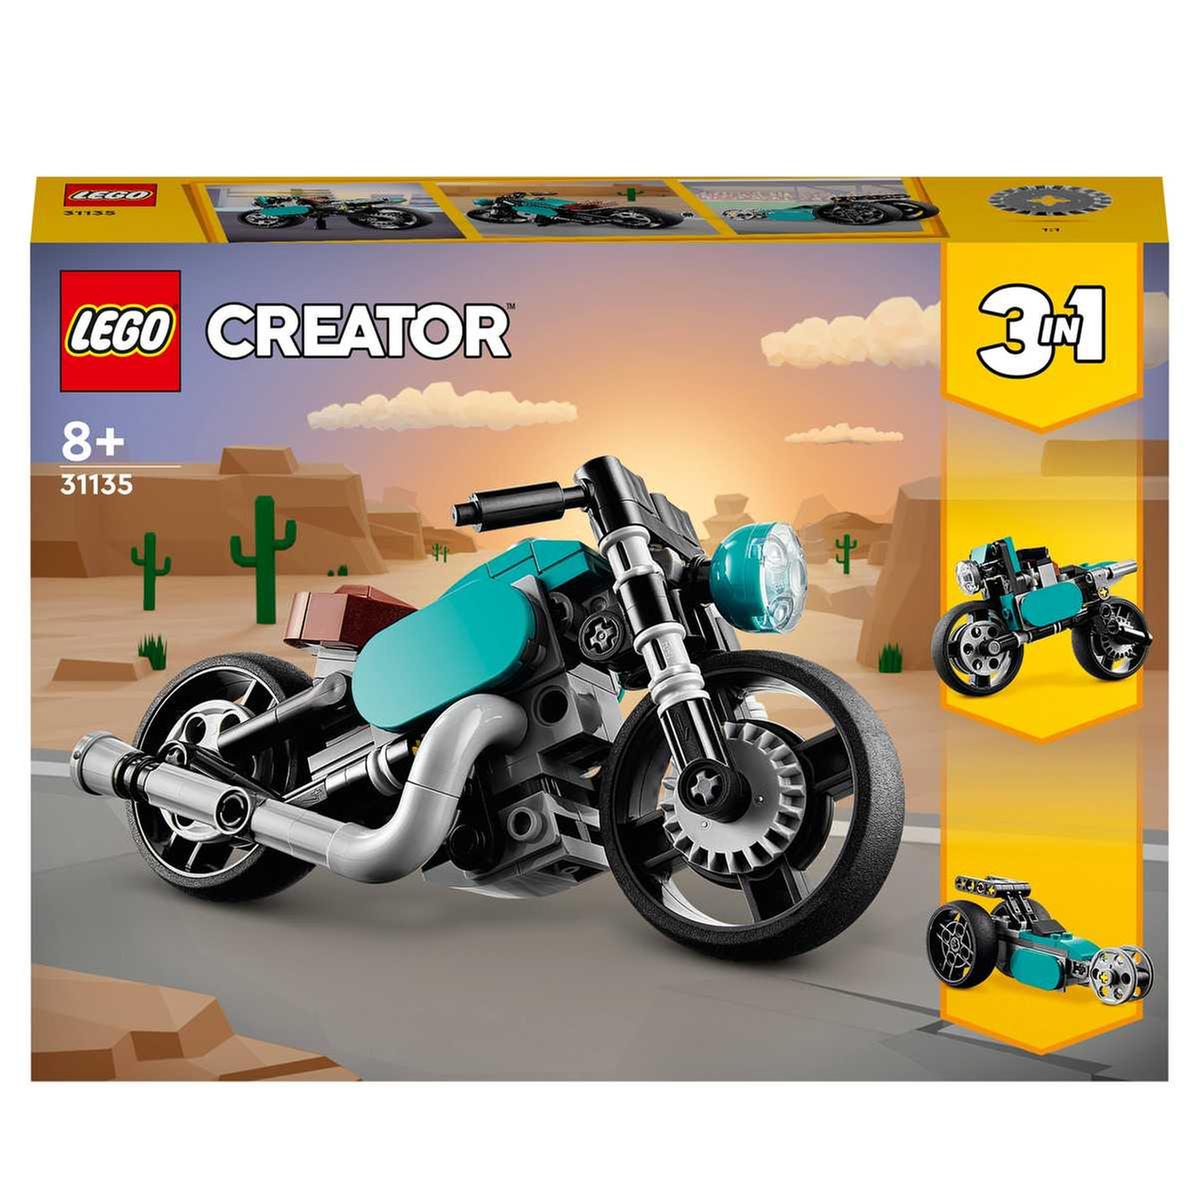 LEGO - Veículos 3 em 1: Moto clássica, bicicleta urbana e carro dragster  31135 | LEGO CREATOR | Loja de brinquedos e videojogos Online Toysrus